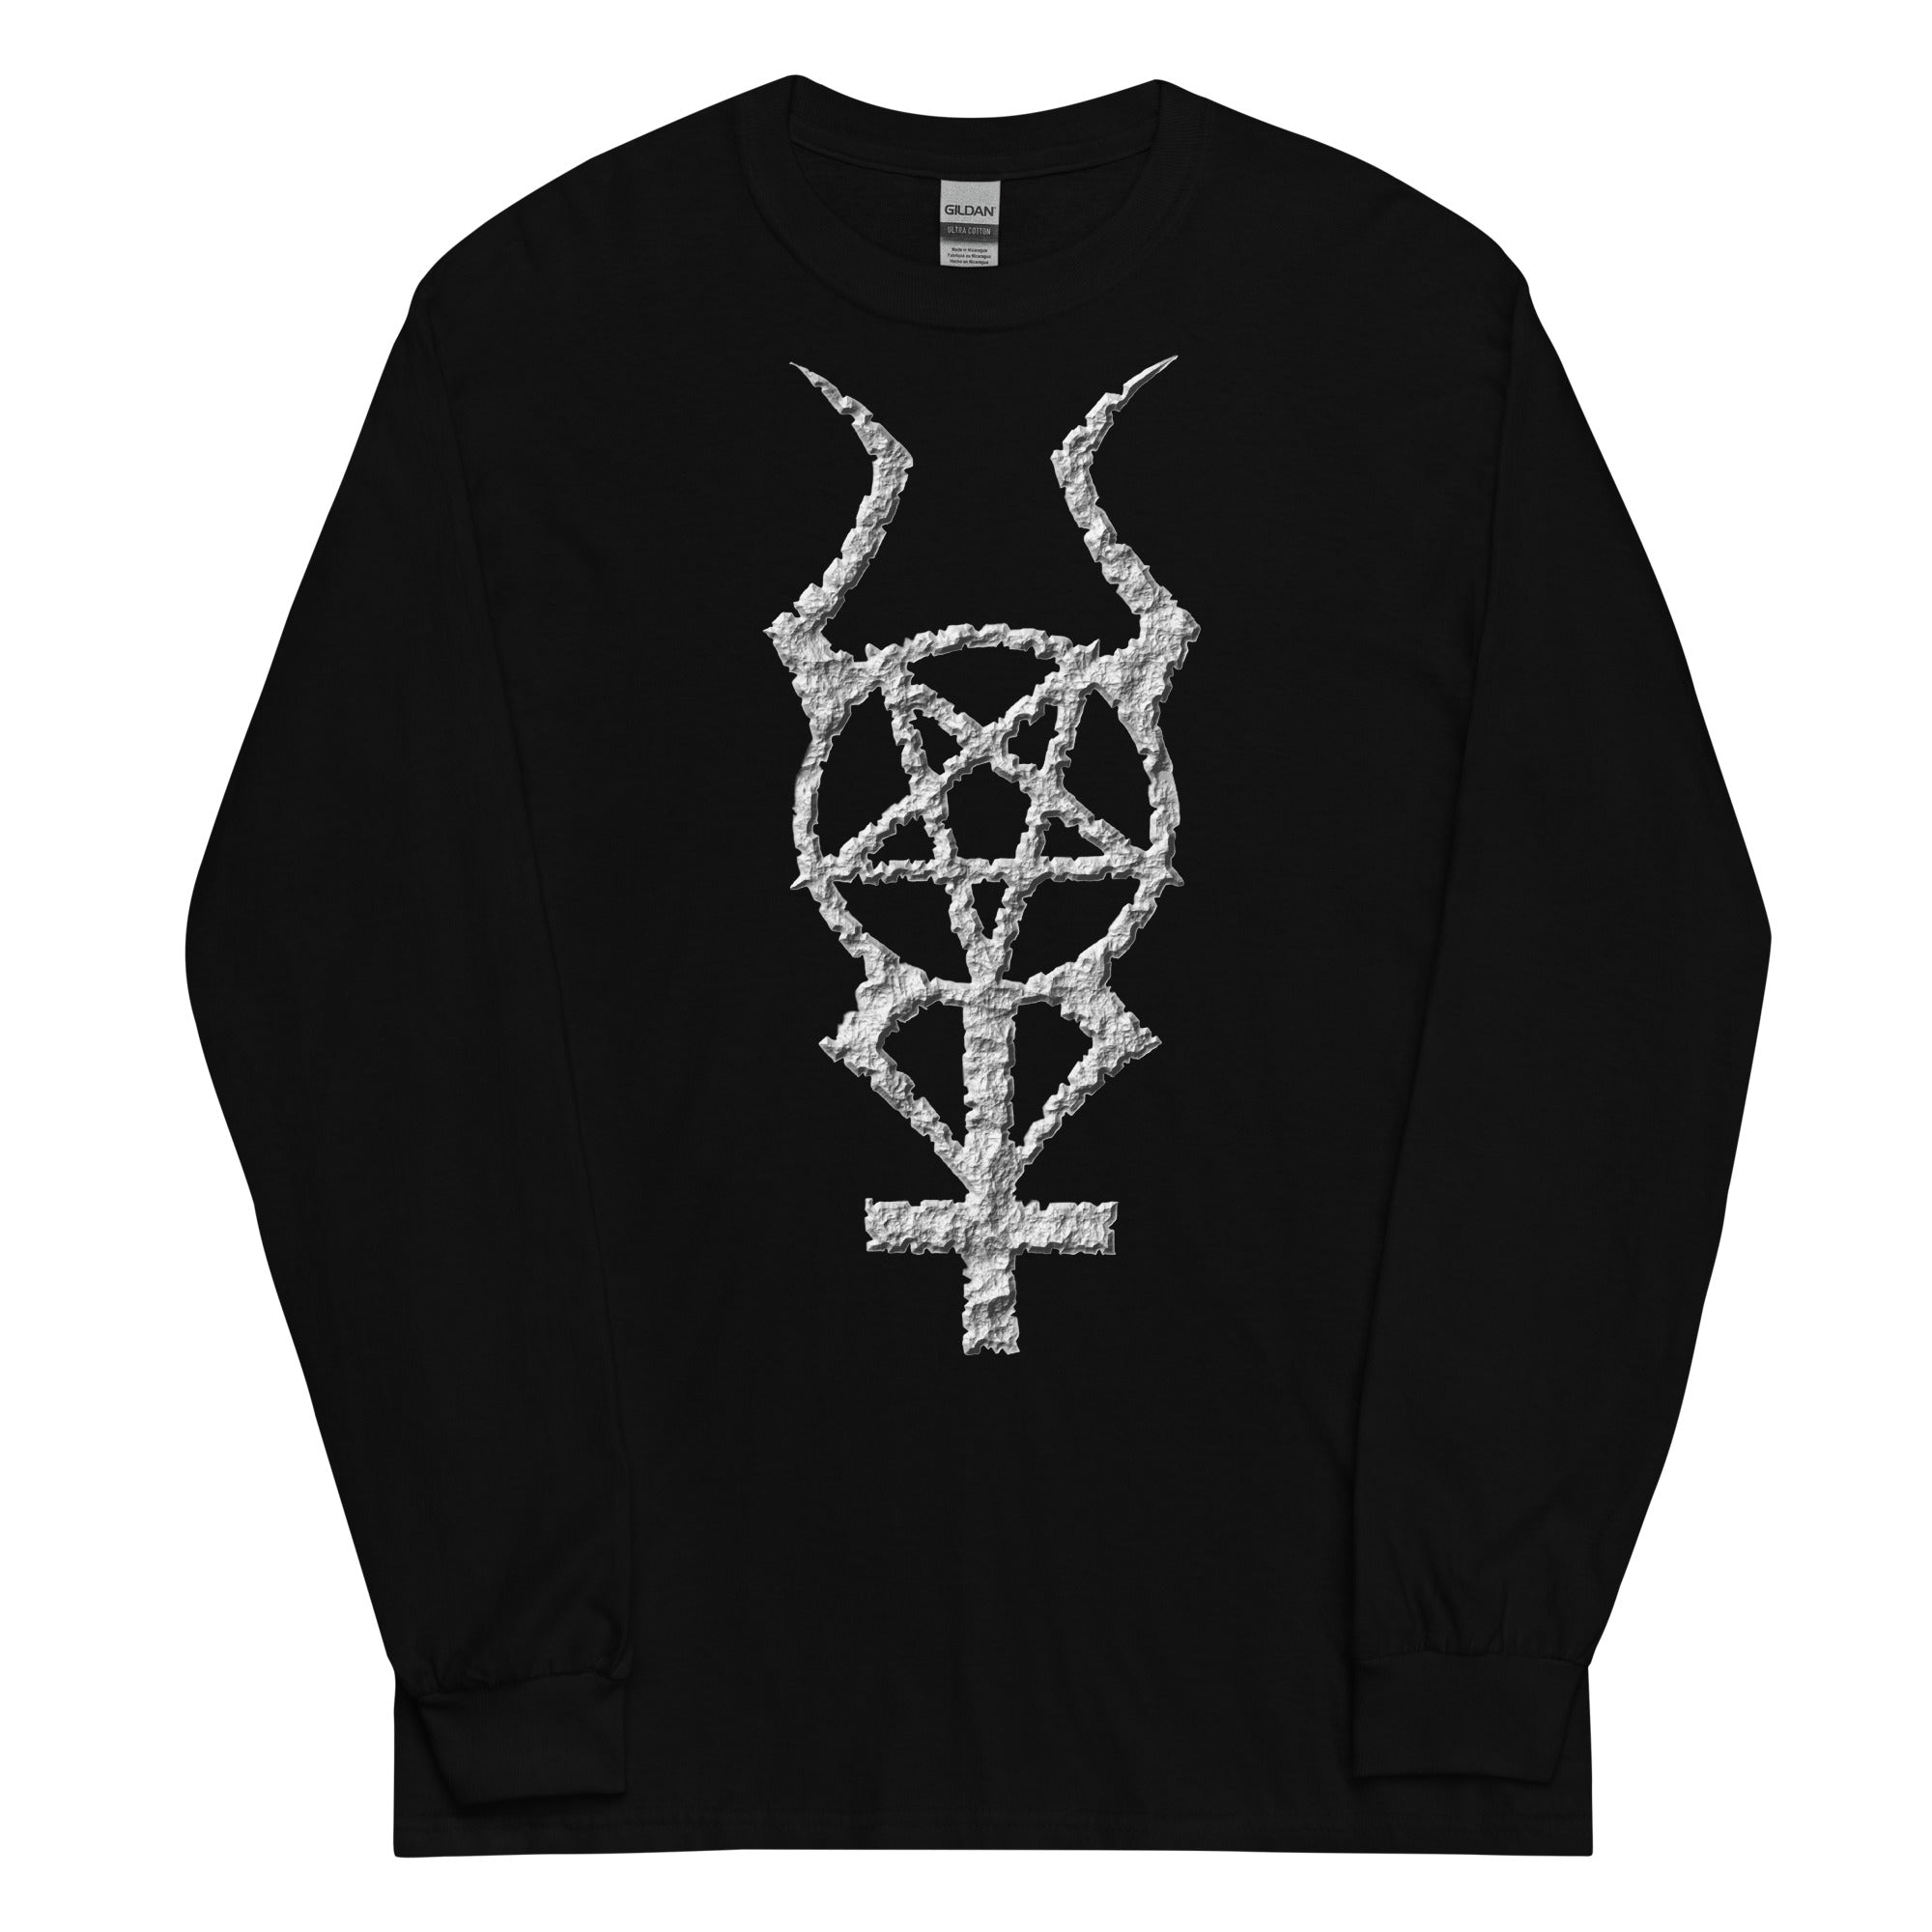 Ancient Stone Horned Pentacross Pentagram Cross Long Sleeve Shirt - Edge of Life Designs